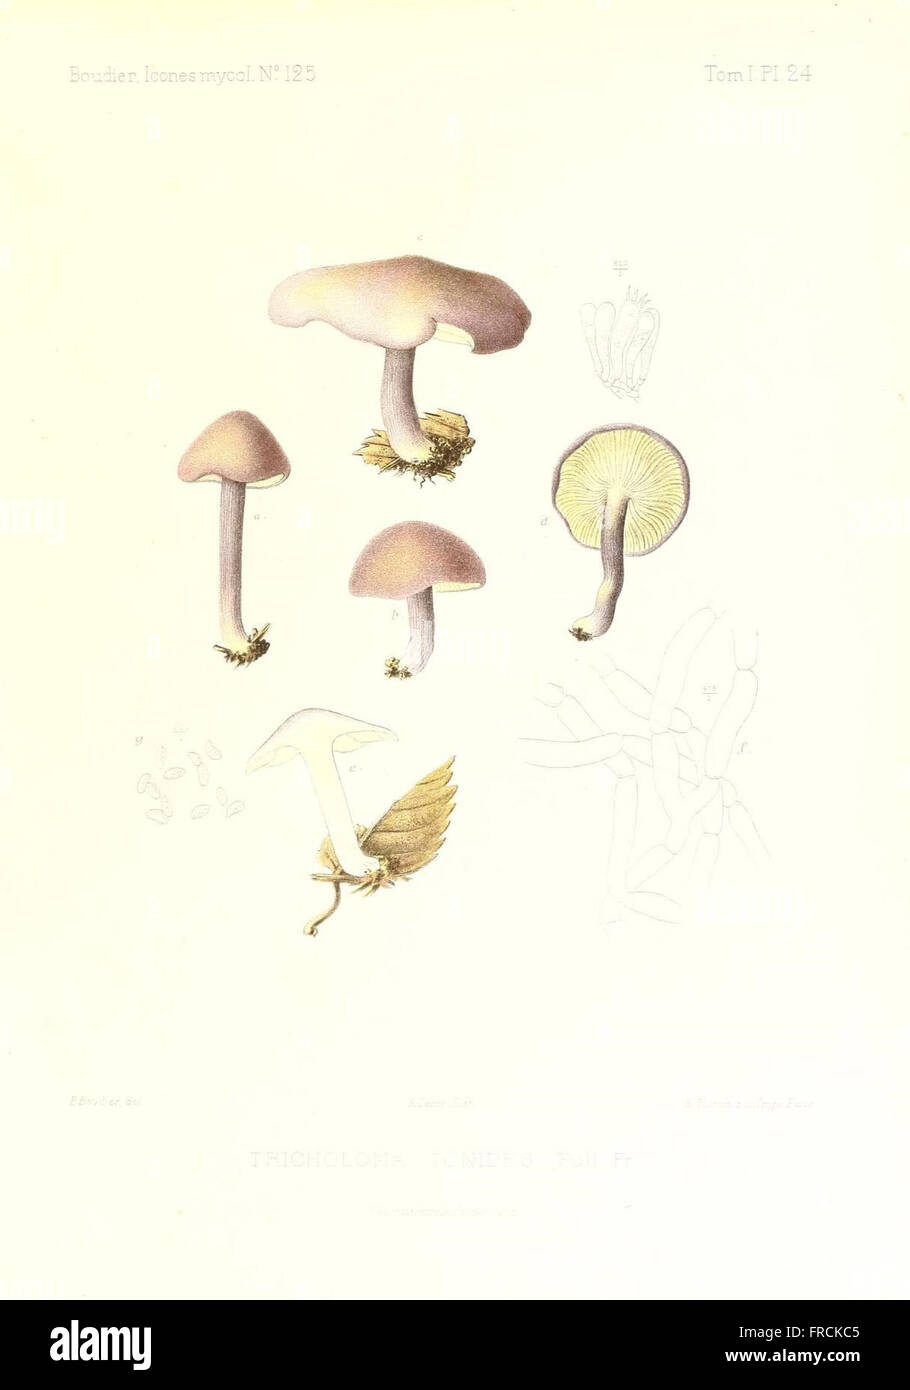 Icones mycologicC3A6, ou Iconographie des champignons de France principalement Discomycetes (Pl. 24) Stock Photo